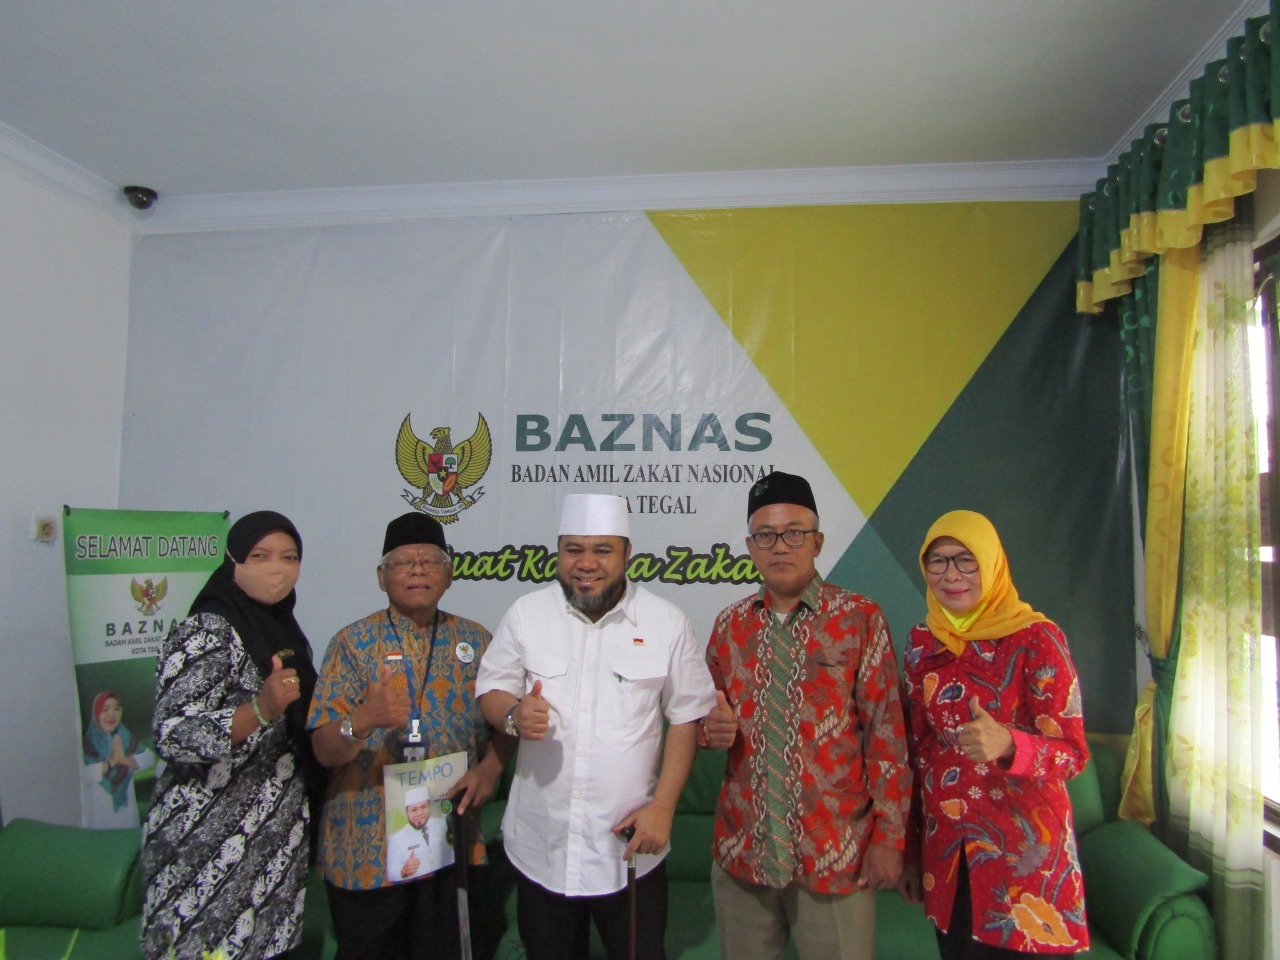 Baznas Kota Tegal Dikunjungi Wali Kota Bengkulu, Program Baznas Akan Ditiru